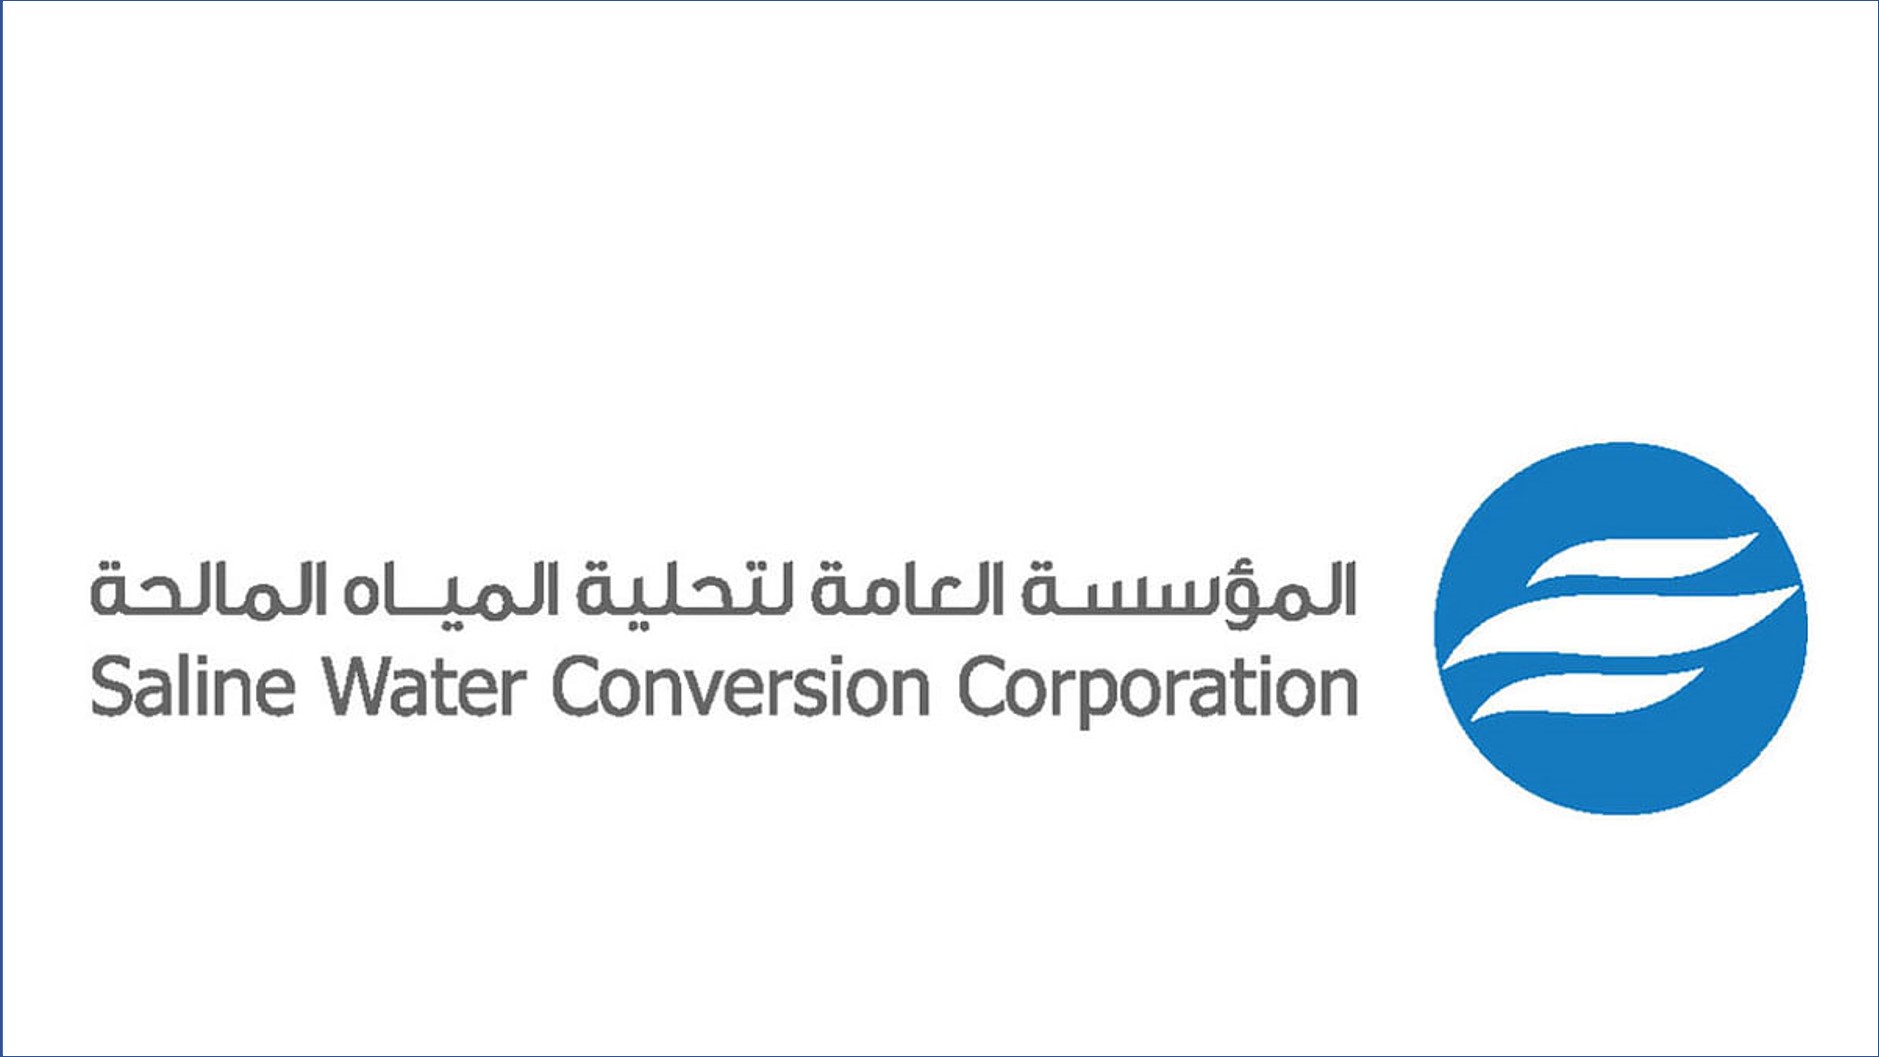 المؤسسة العامة لتحلية المياه المالحة 1 - 15000 وظيفة